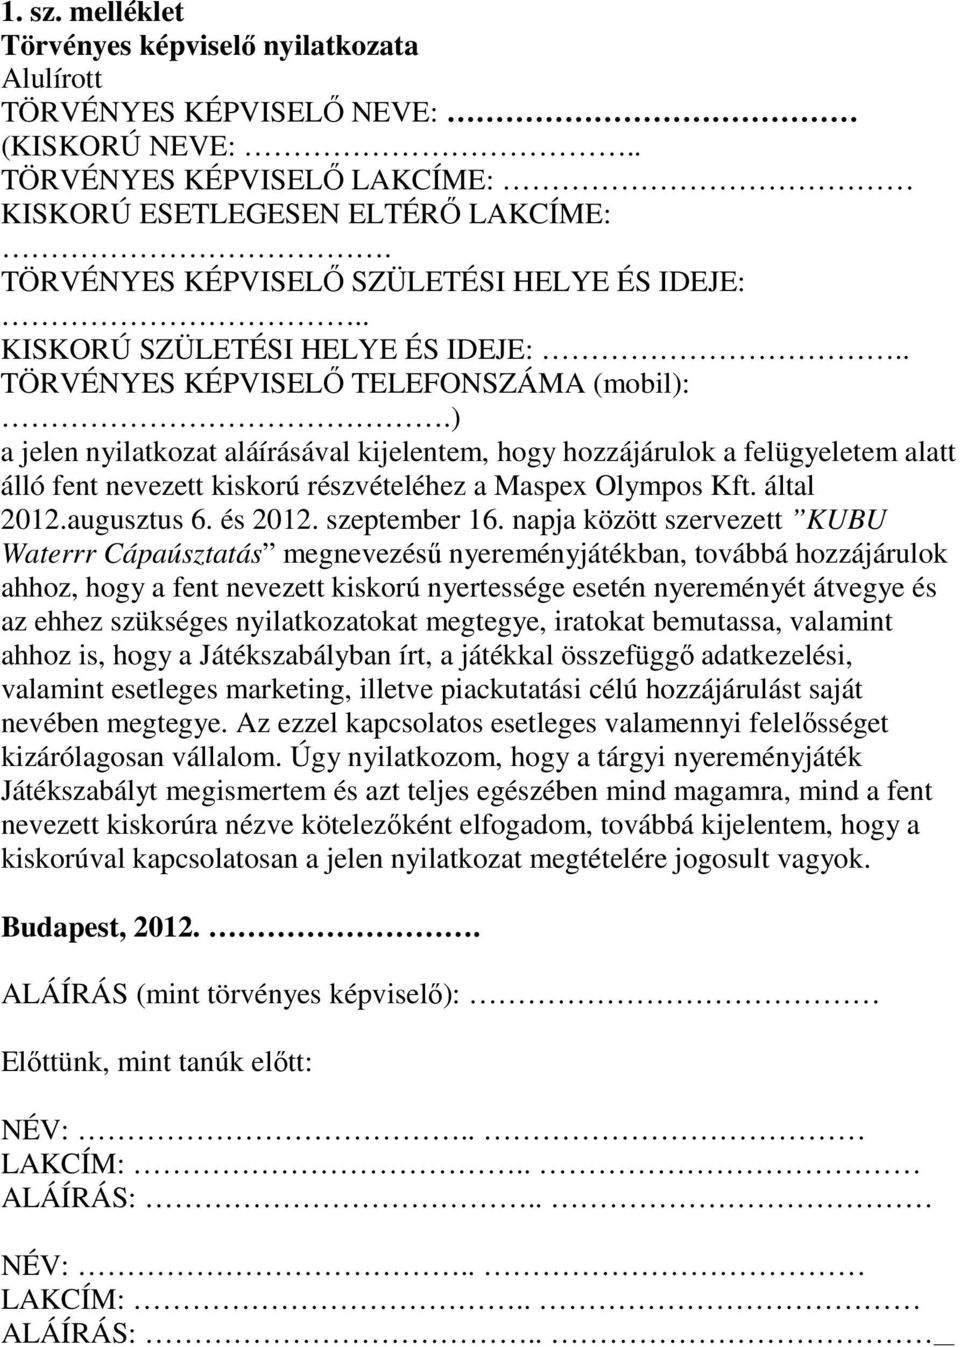 ) a jelen nyilatkozat aláírásával kijelentem, hogy hozzájárulok a felügyeletem alatt álló fent nevezett kiskorú részvételéhez a Maspex Olympos Kft. által 2012.augusztus 6. és 2012. szeptember 16.